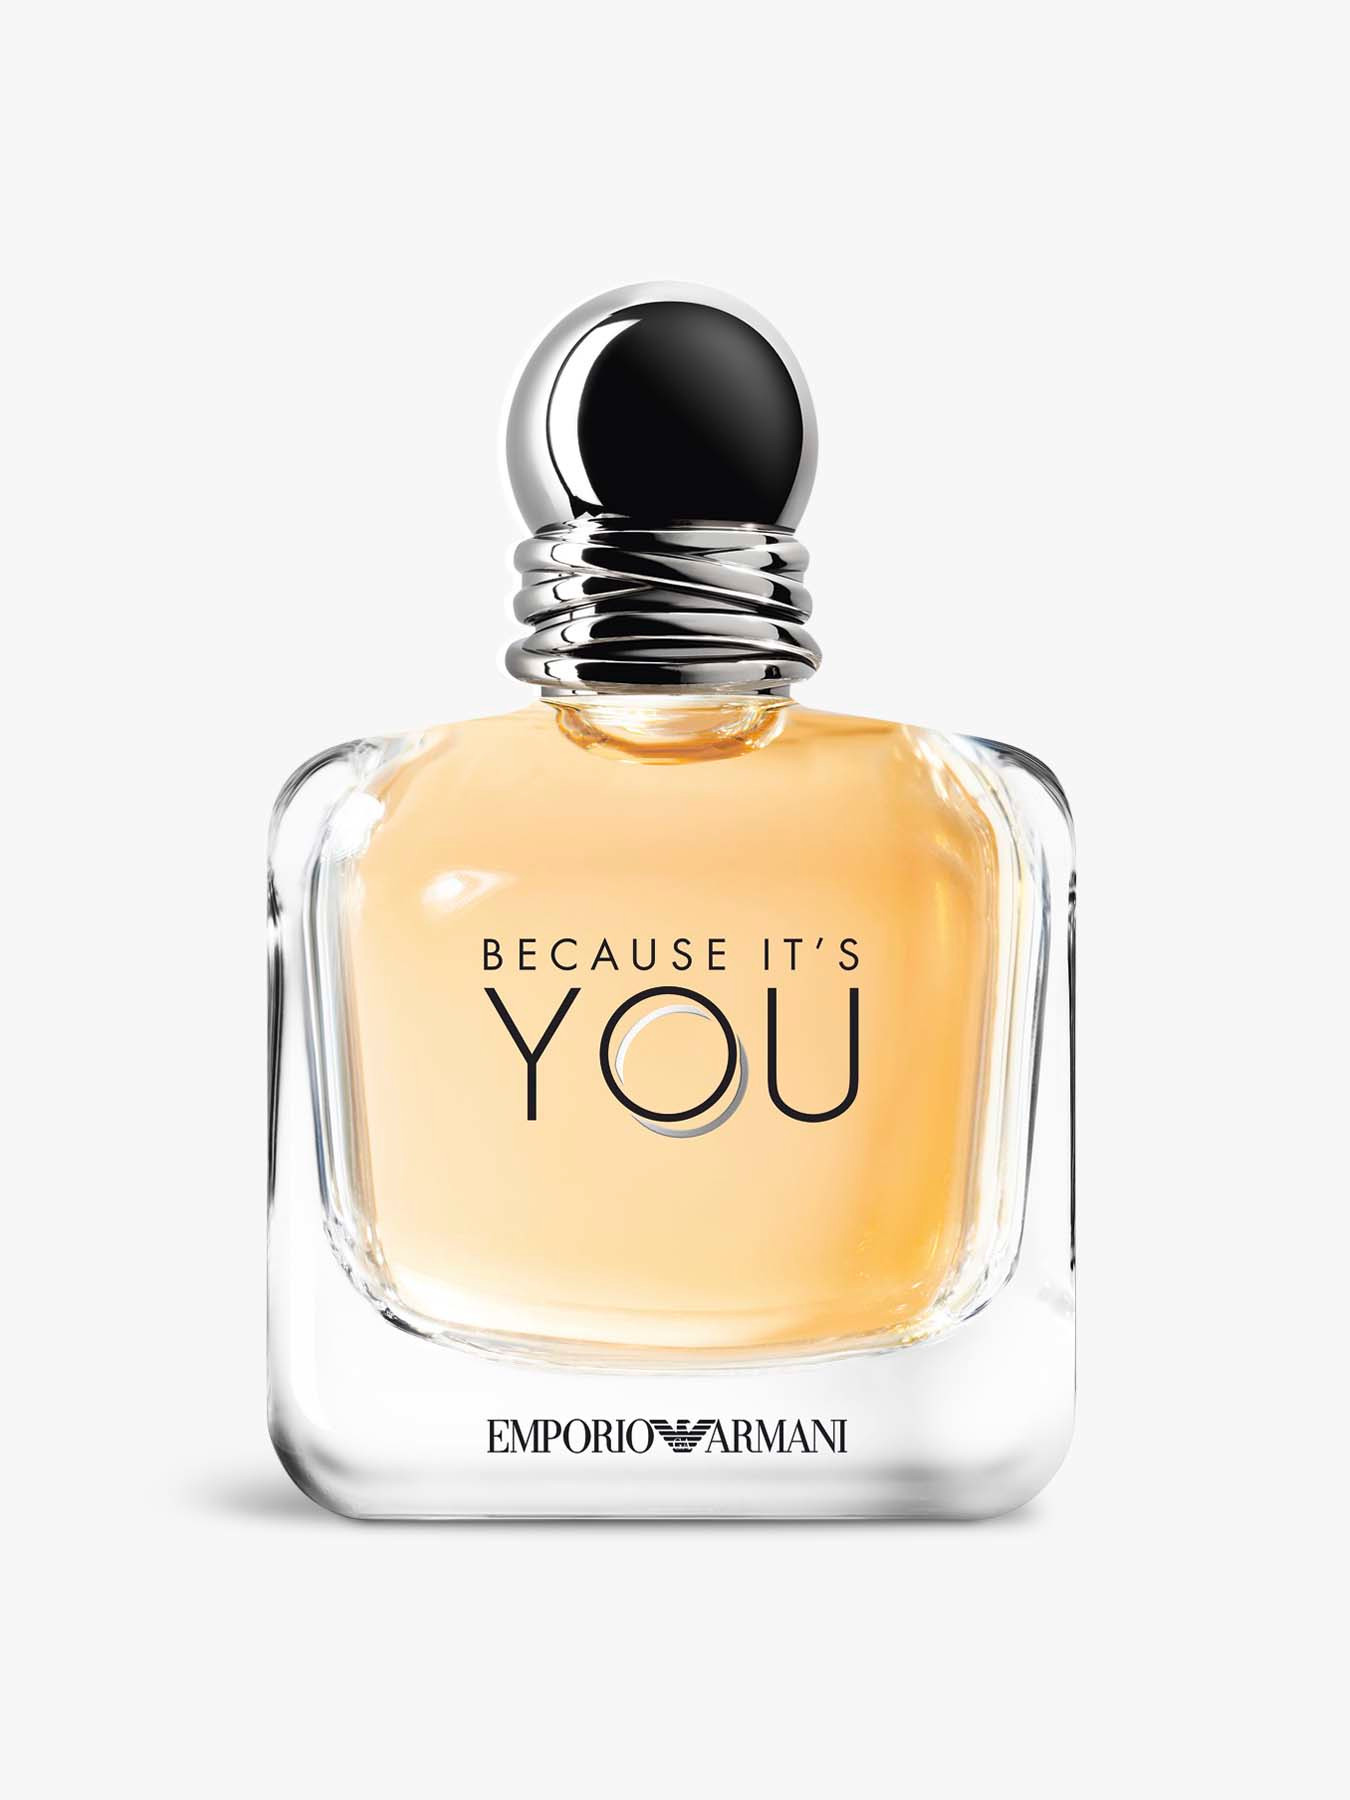 Giorgio Armani Because It's You Eau de Parfum 100 ml | Fenwick